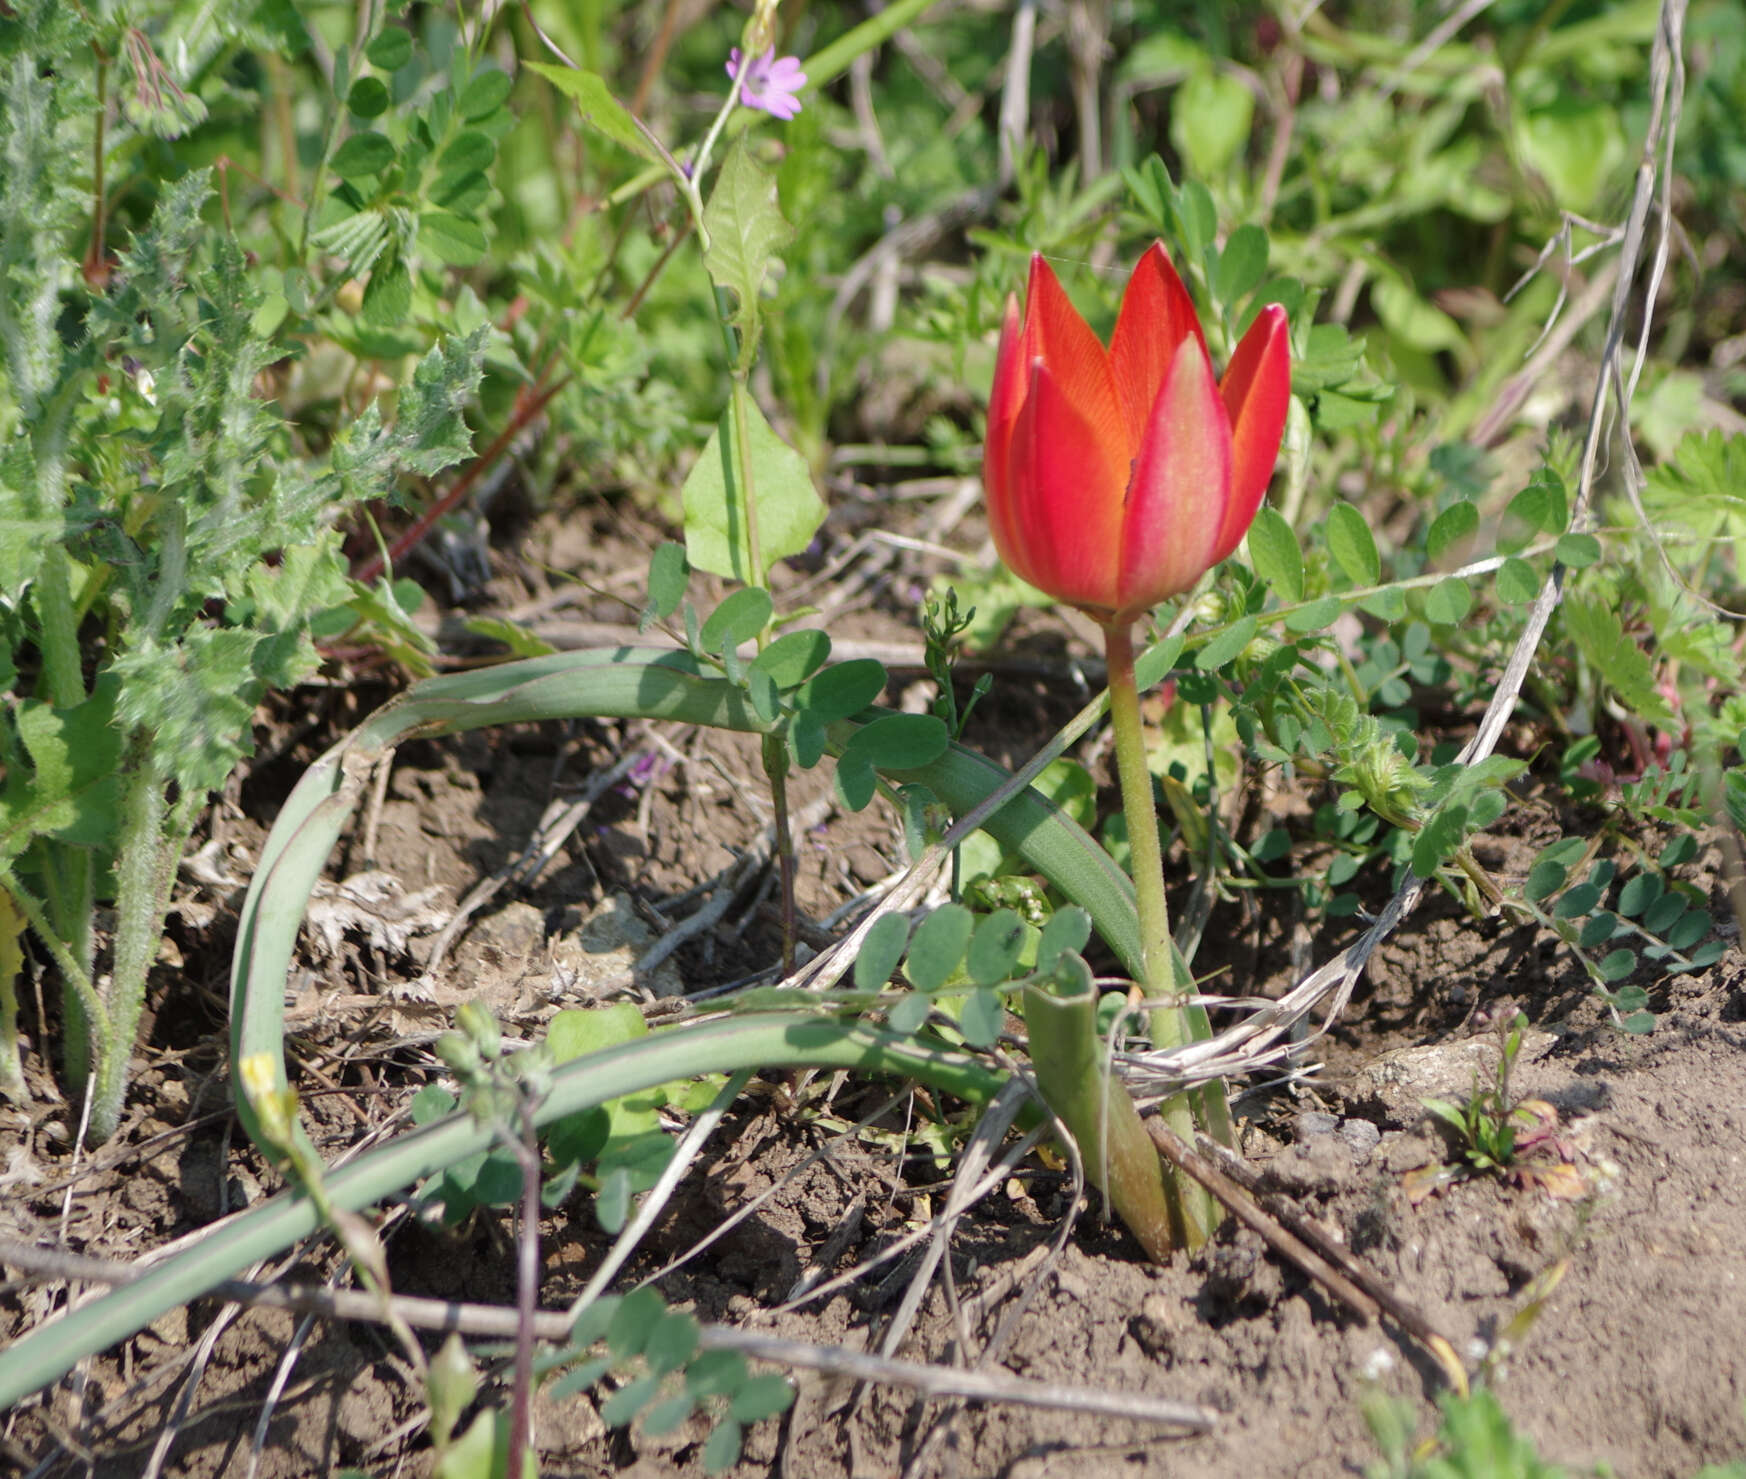 Image of orange wild tulip